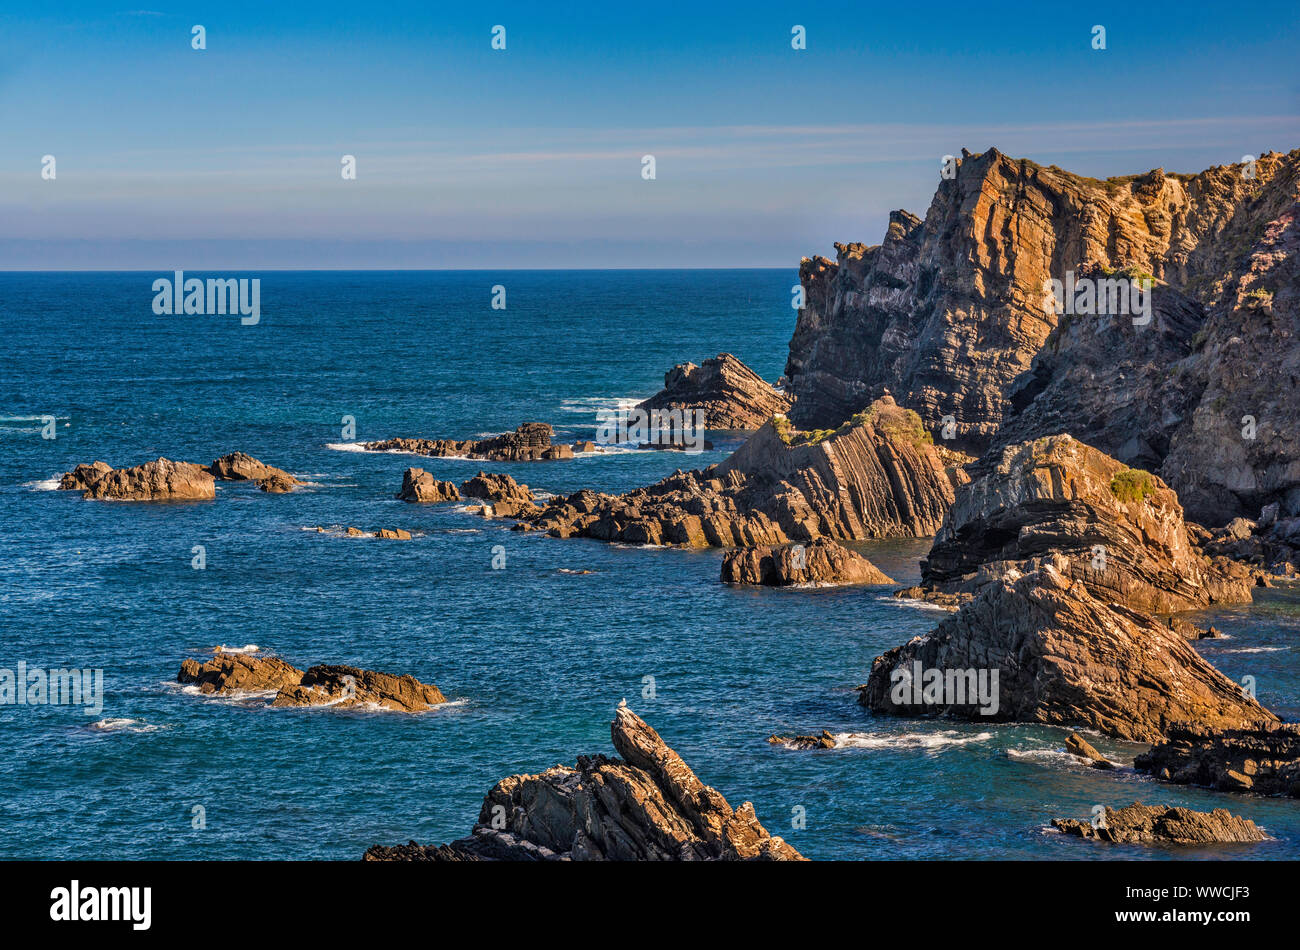 Felsformationen an der Atlantik Küste in der Nähe von Dorf Ple do Mar, Costa Vicentina, Distrikt Beja, Alentejo Litoral Portugal Stockfoto